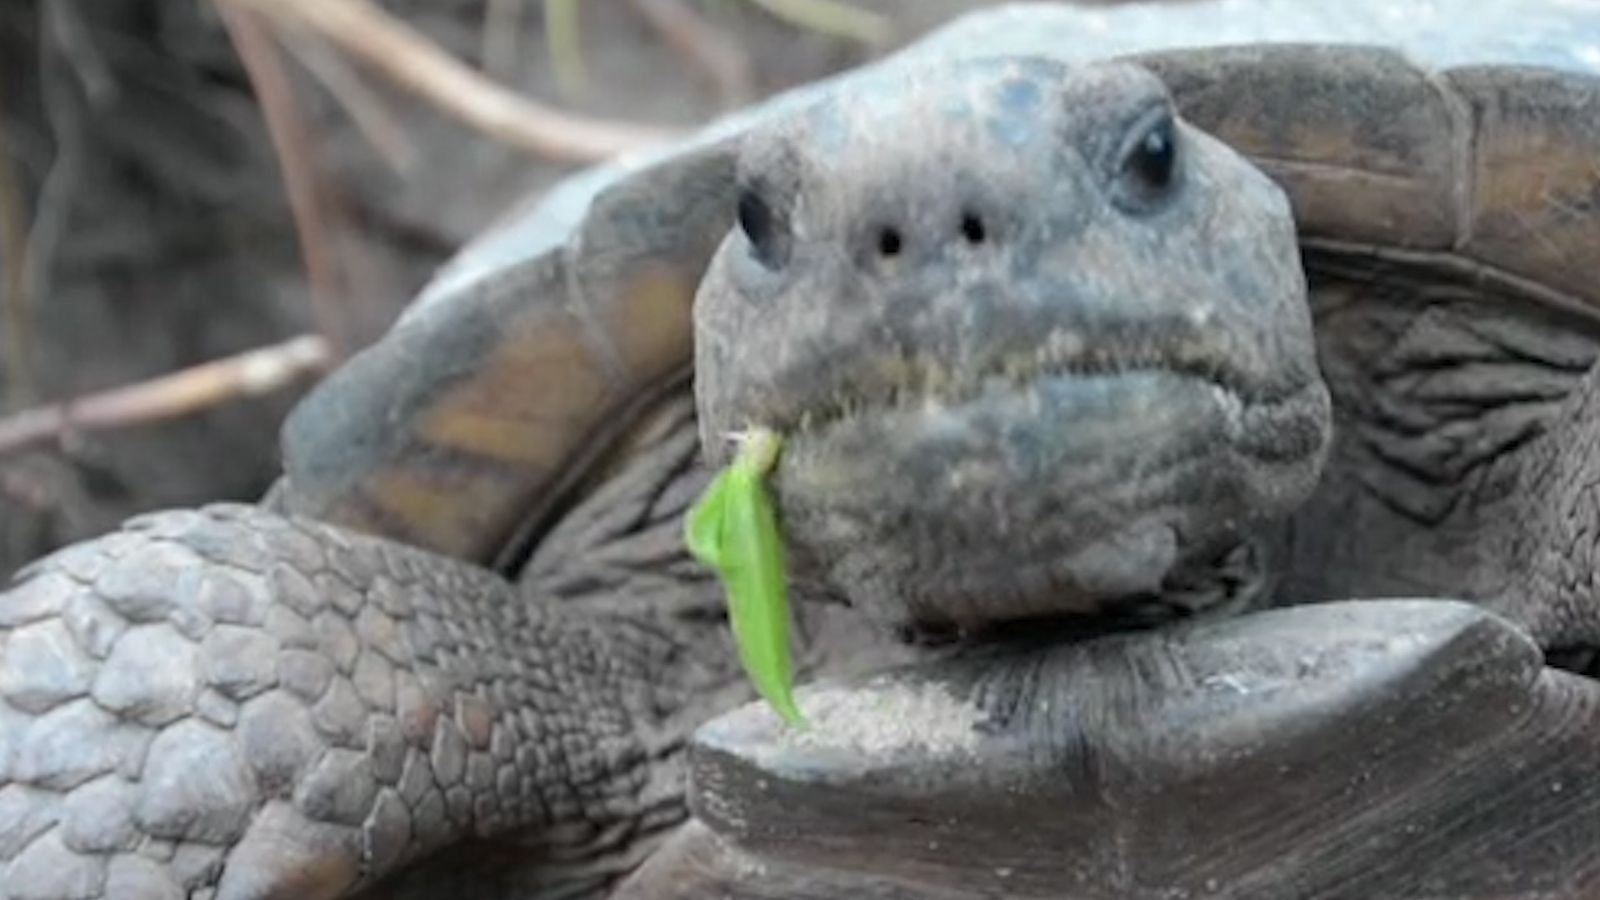 Headbangende Schildkröte – Was soll das?